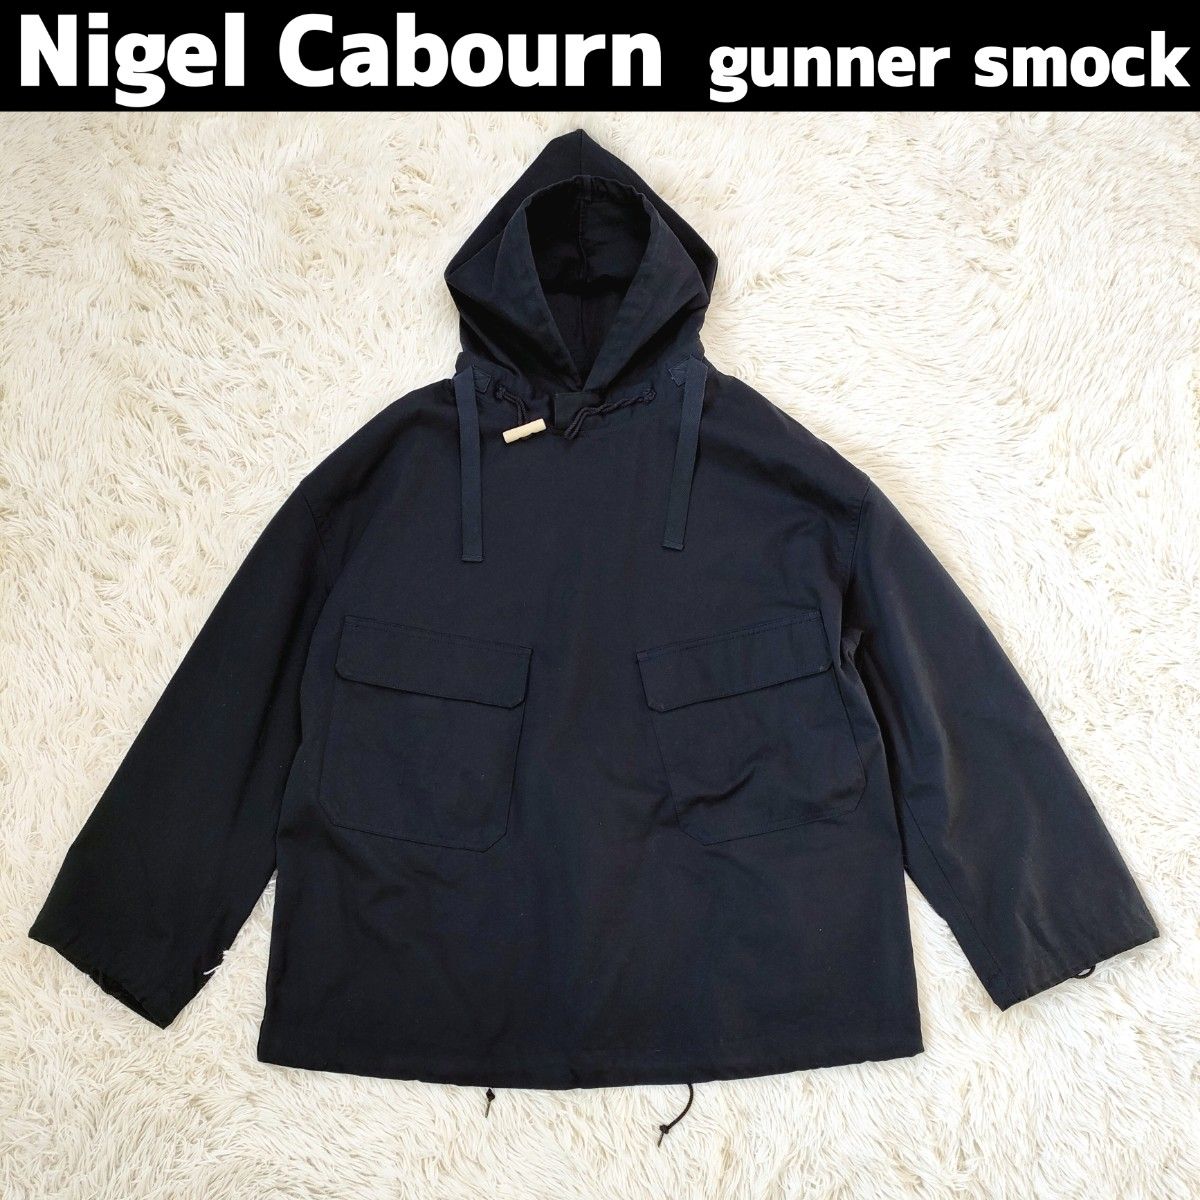 Nigel Cabourn ナイジェルケーボン gunner smock ガンナースモック ネイビー 48 ビッグシルエット